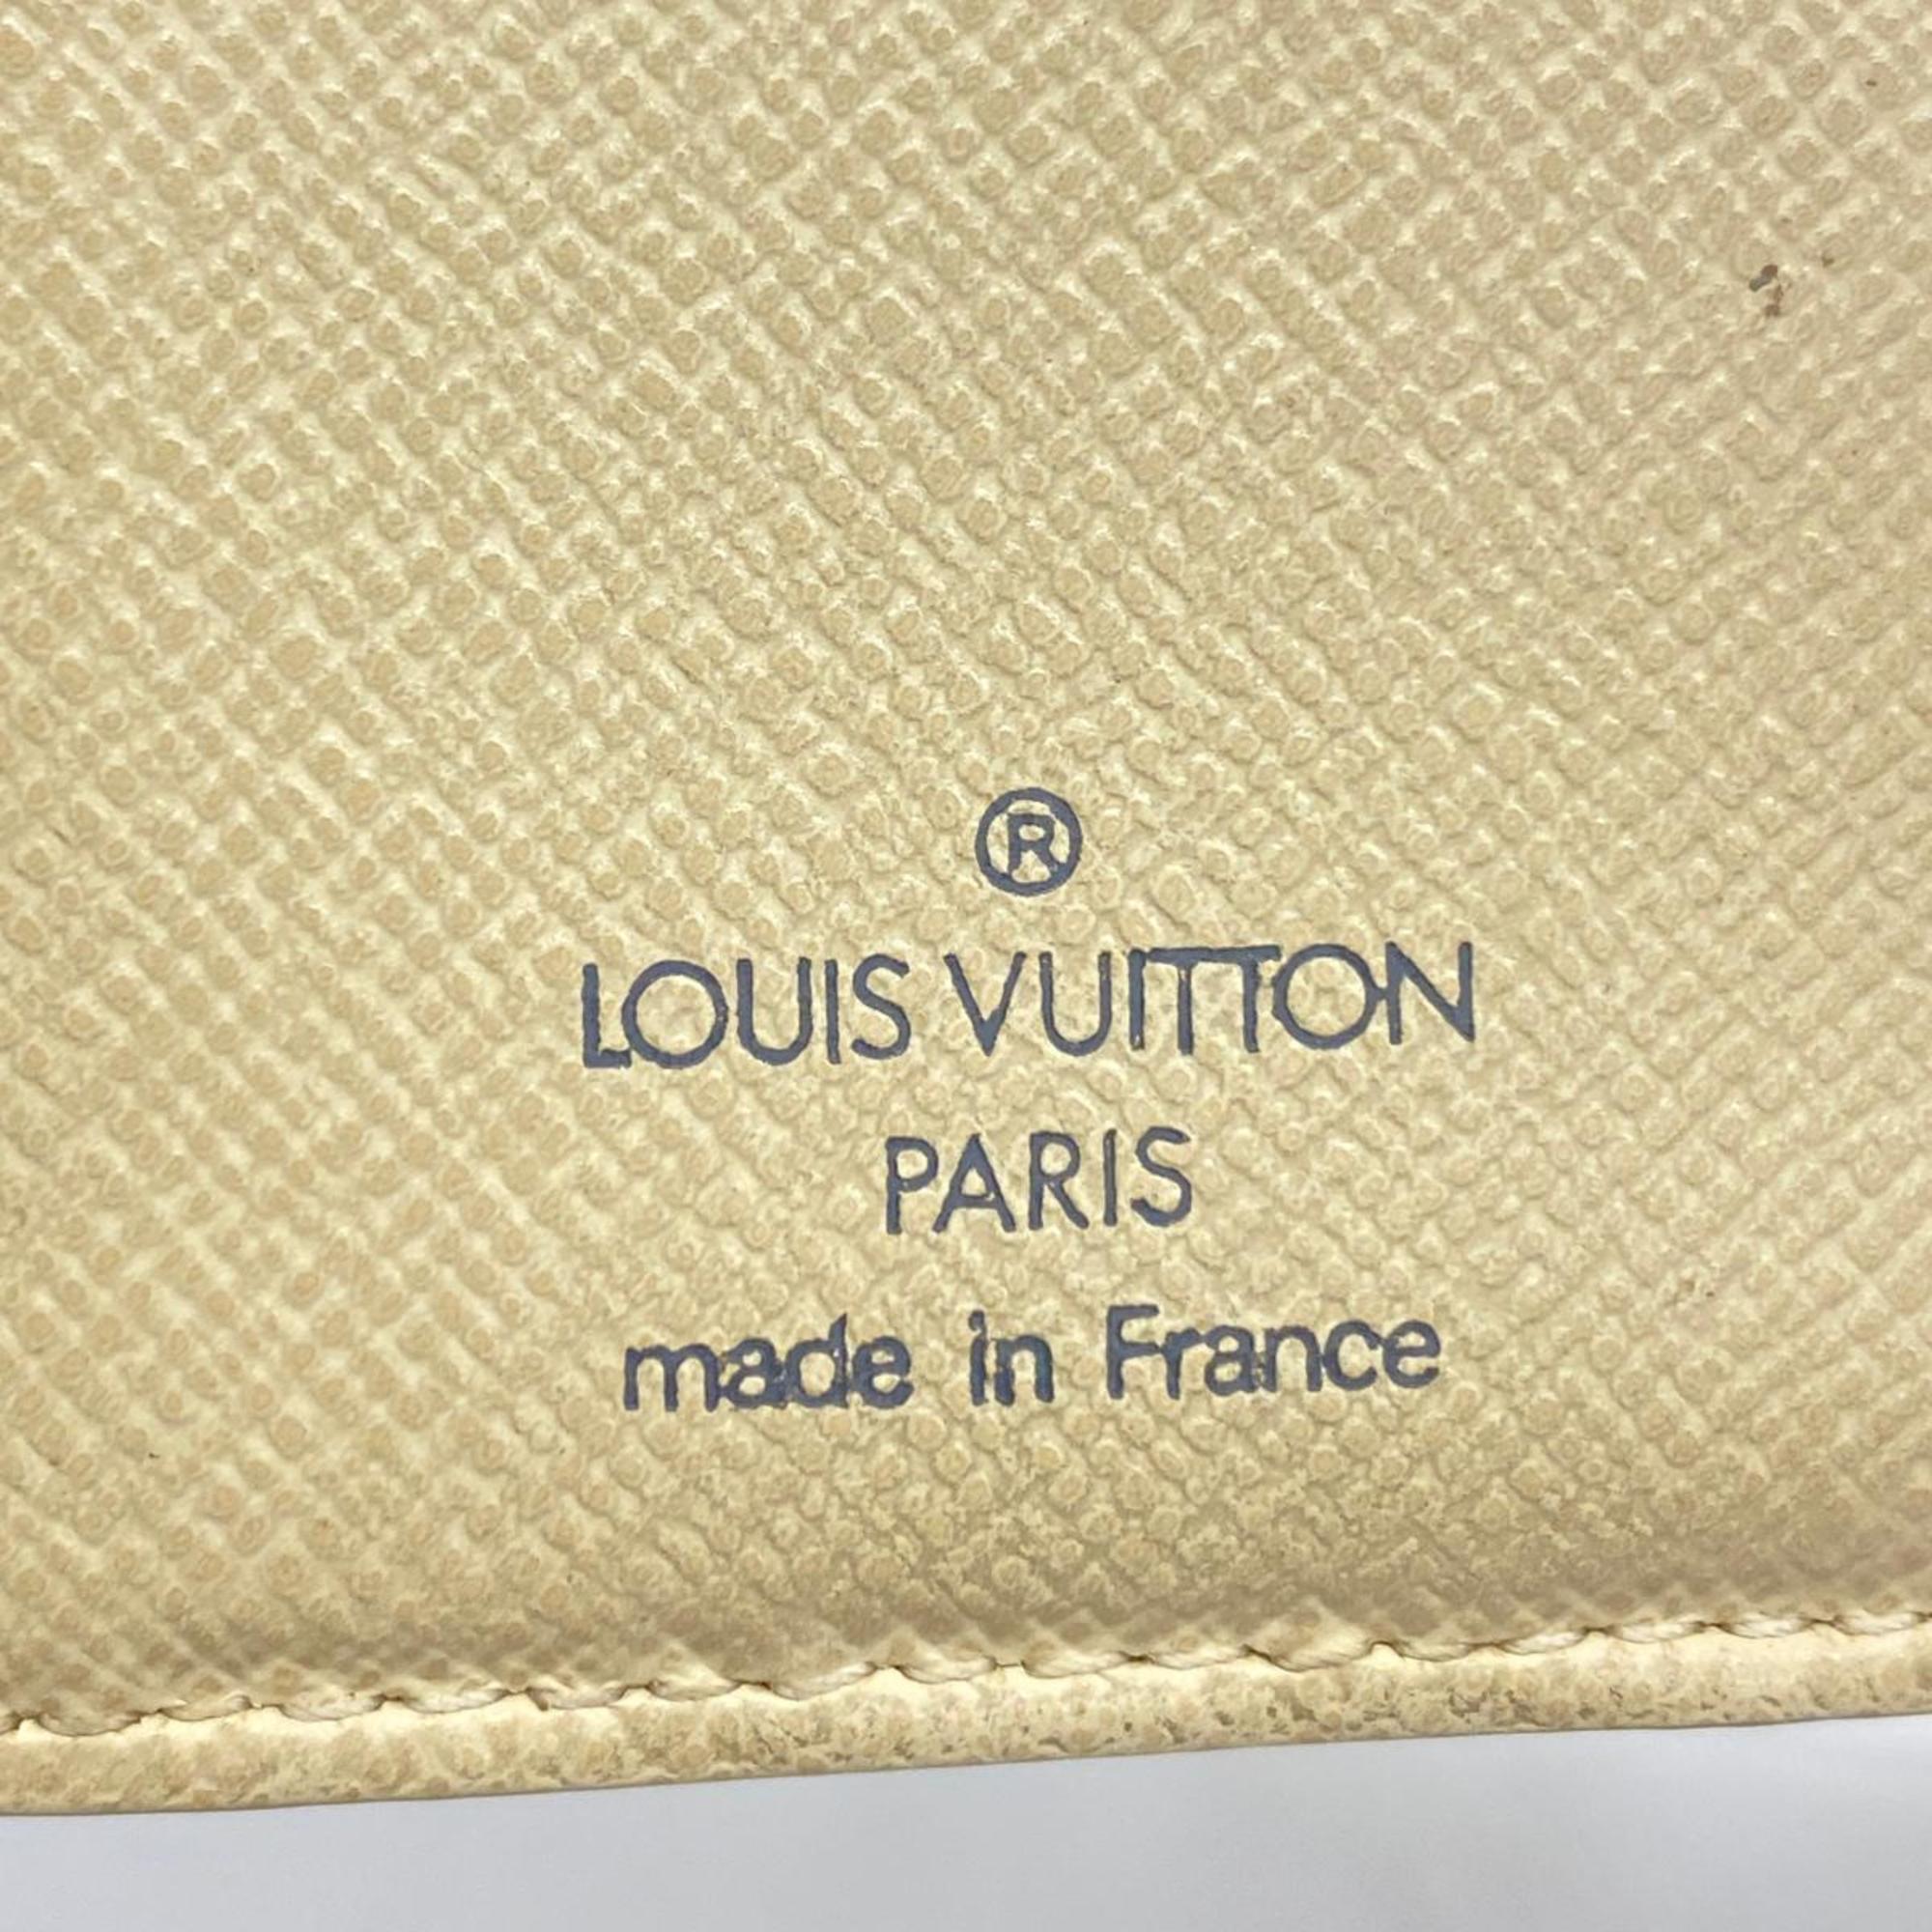 ルイ・ヴィトン(Louis Vuitton) ルイ・ヴィトン 財布 ダミエ・アズール ポルトフォイユヴィエノワ N61676 ホワイトメンズ レディース